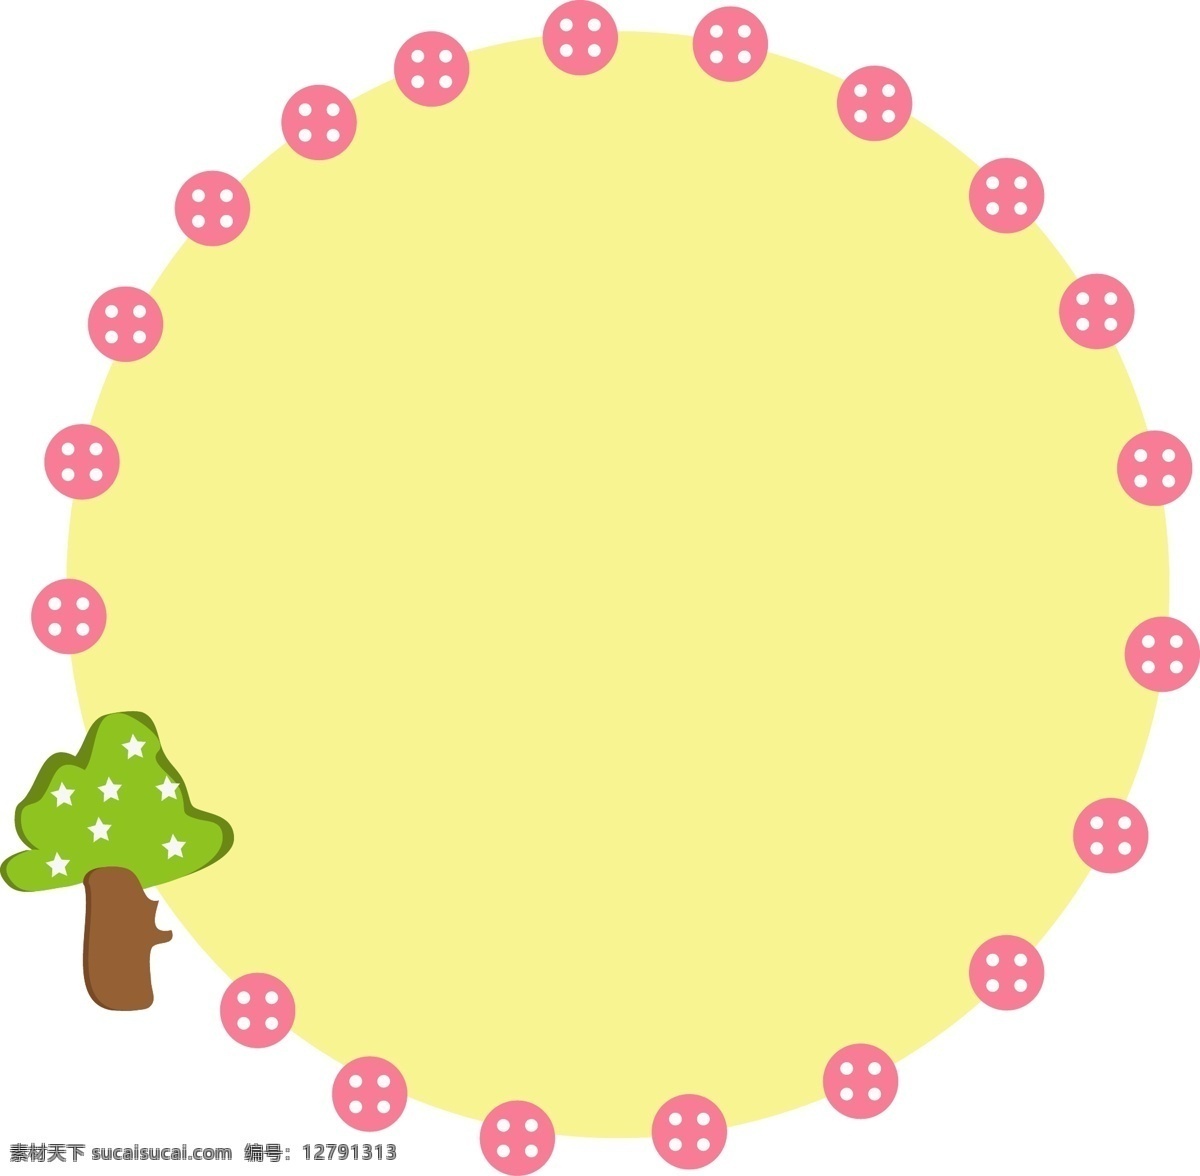 树木 边框 装饰 插画 树木边框 黄色的边框 圆形边框 漂亮的边框 植物边框 精美边框 立体边框